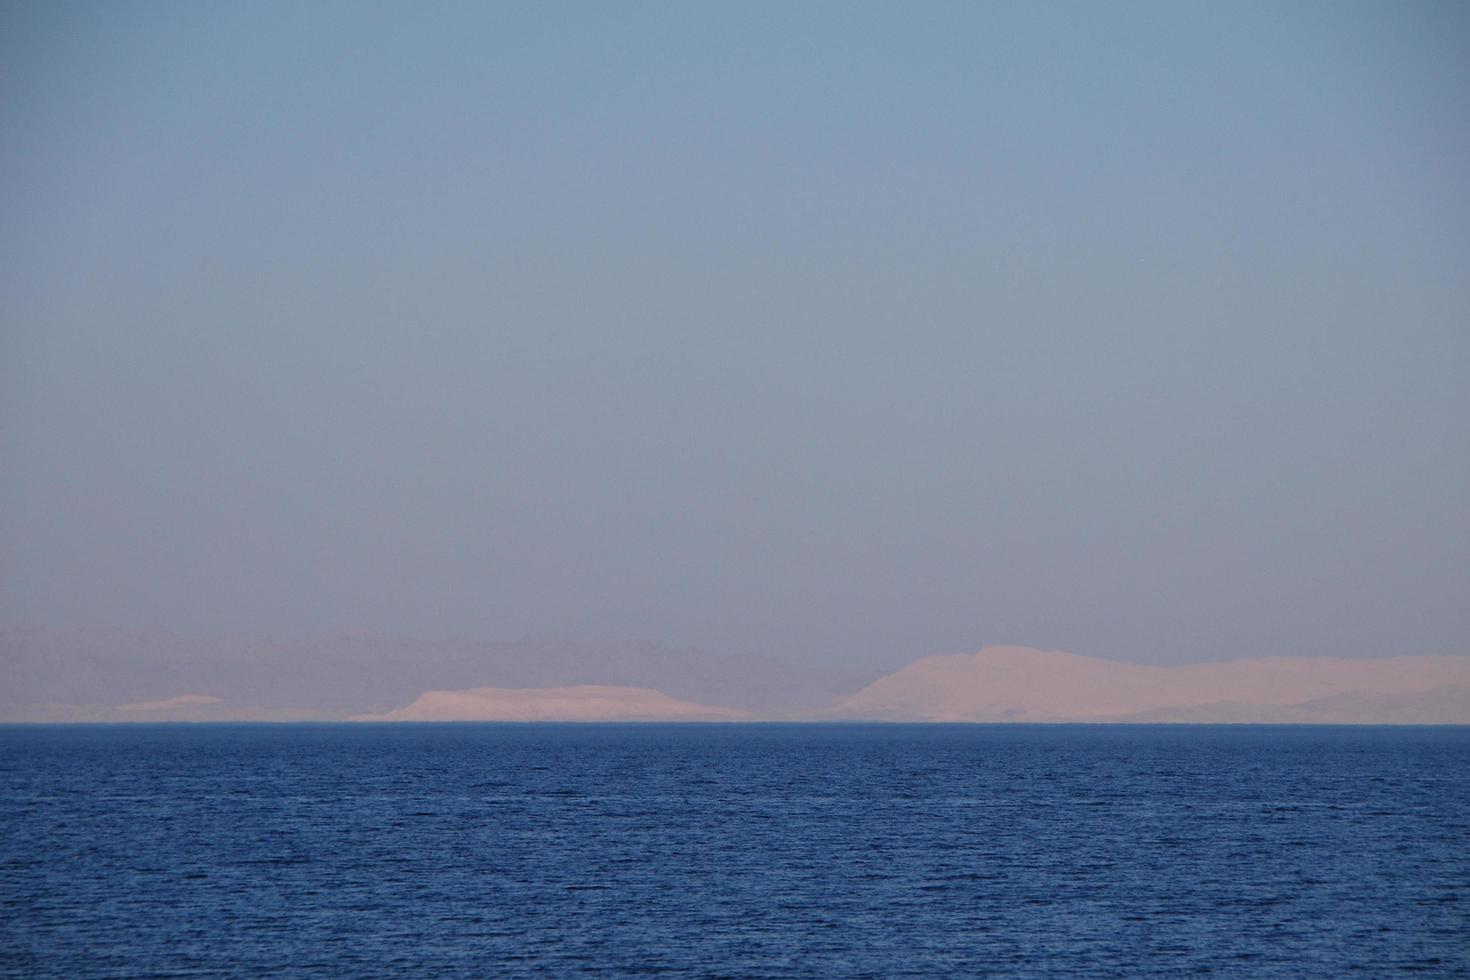 sea and mountain on the horizon photo